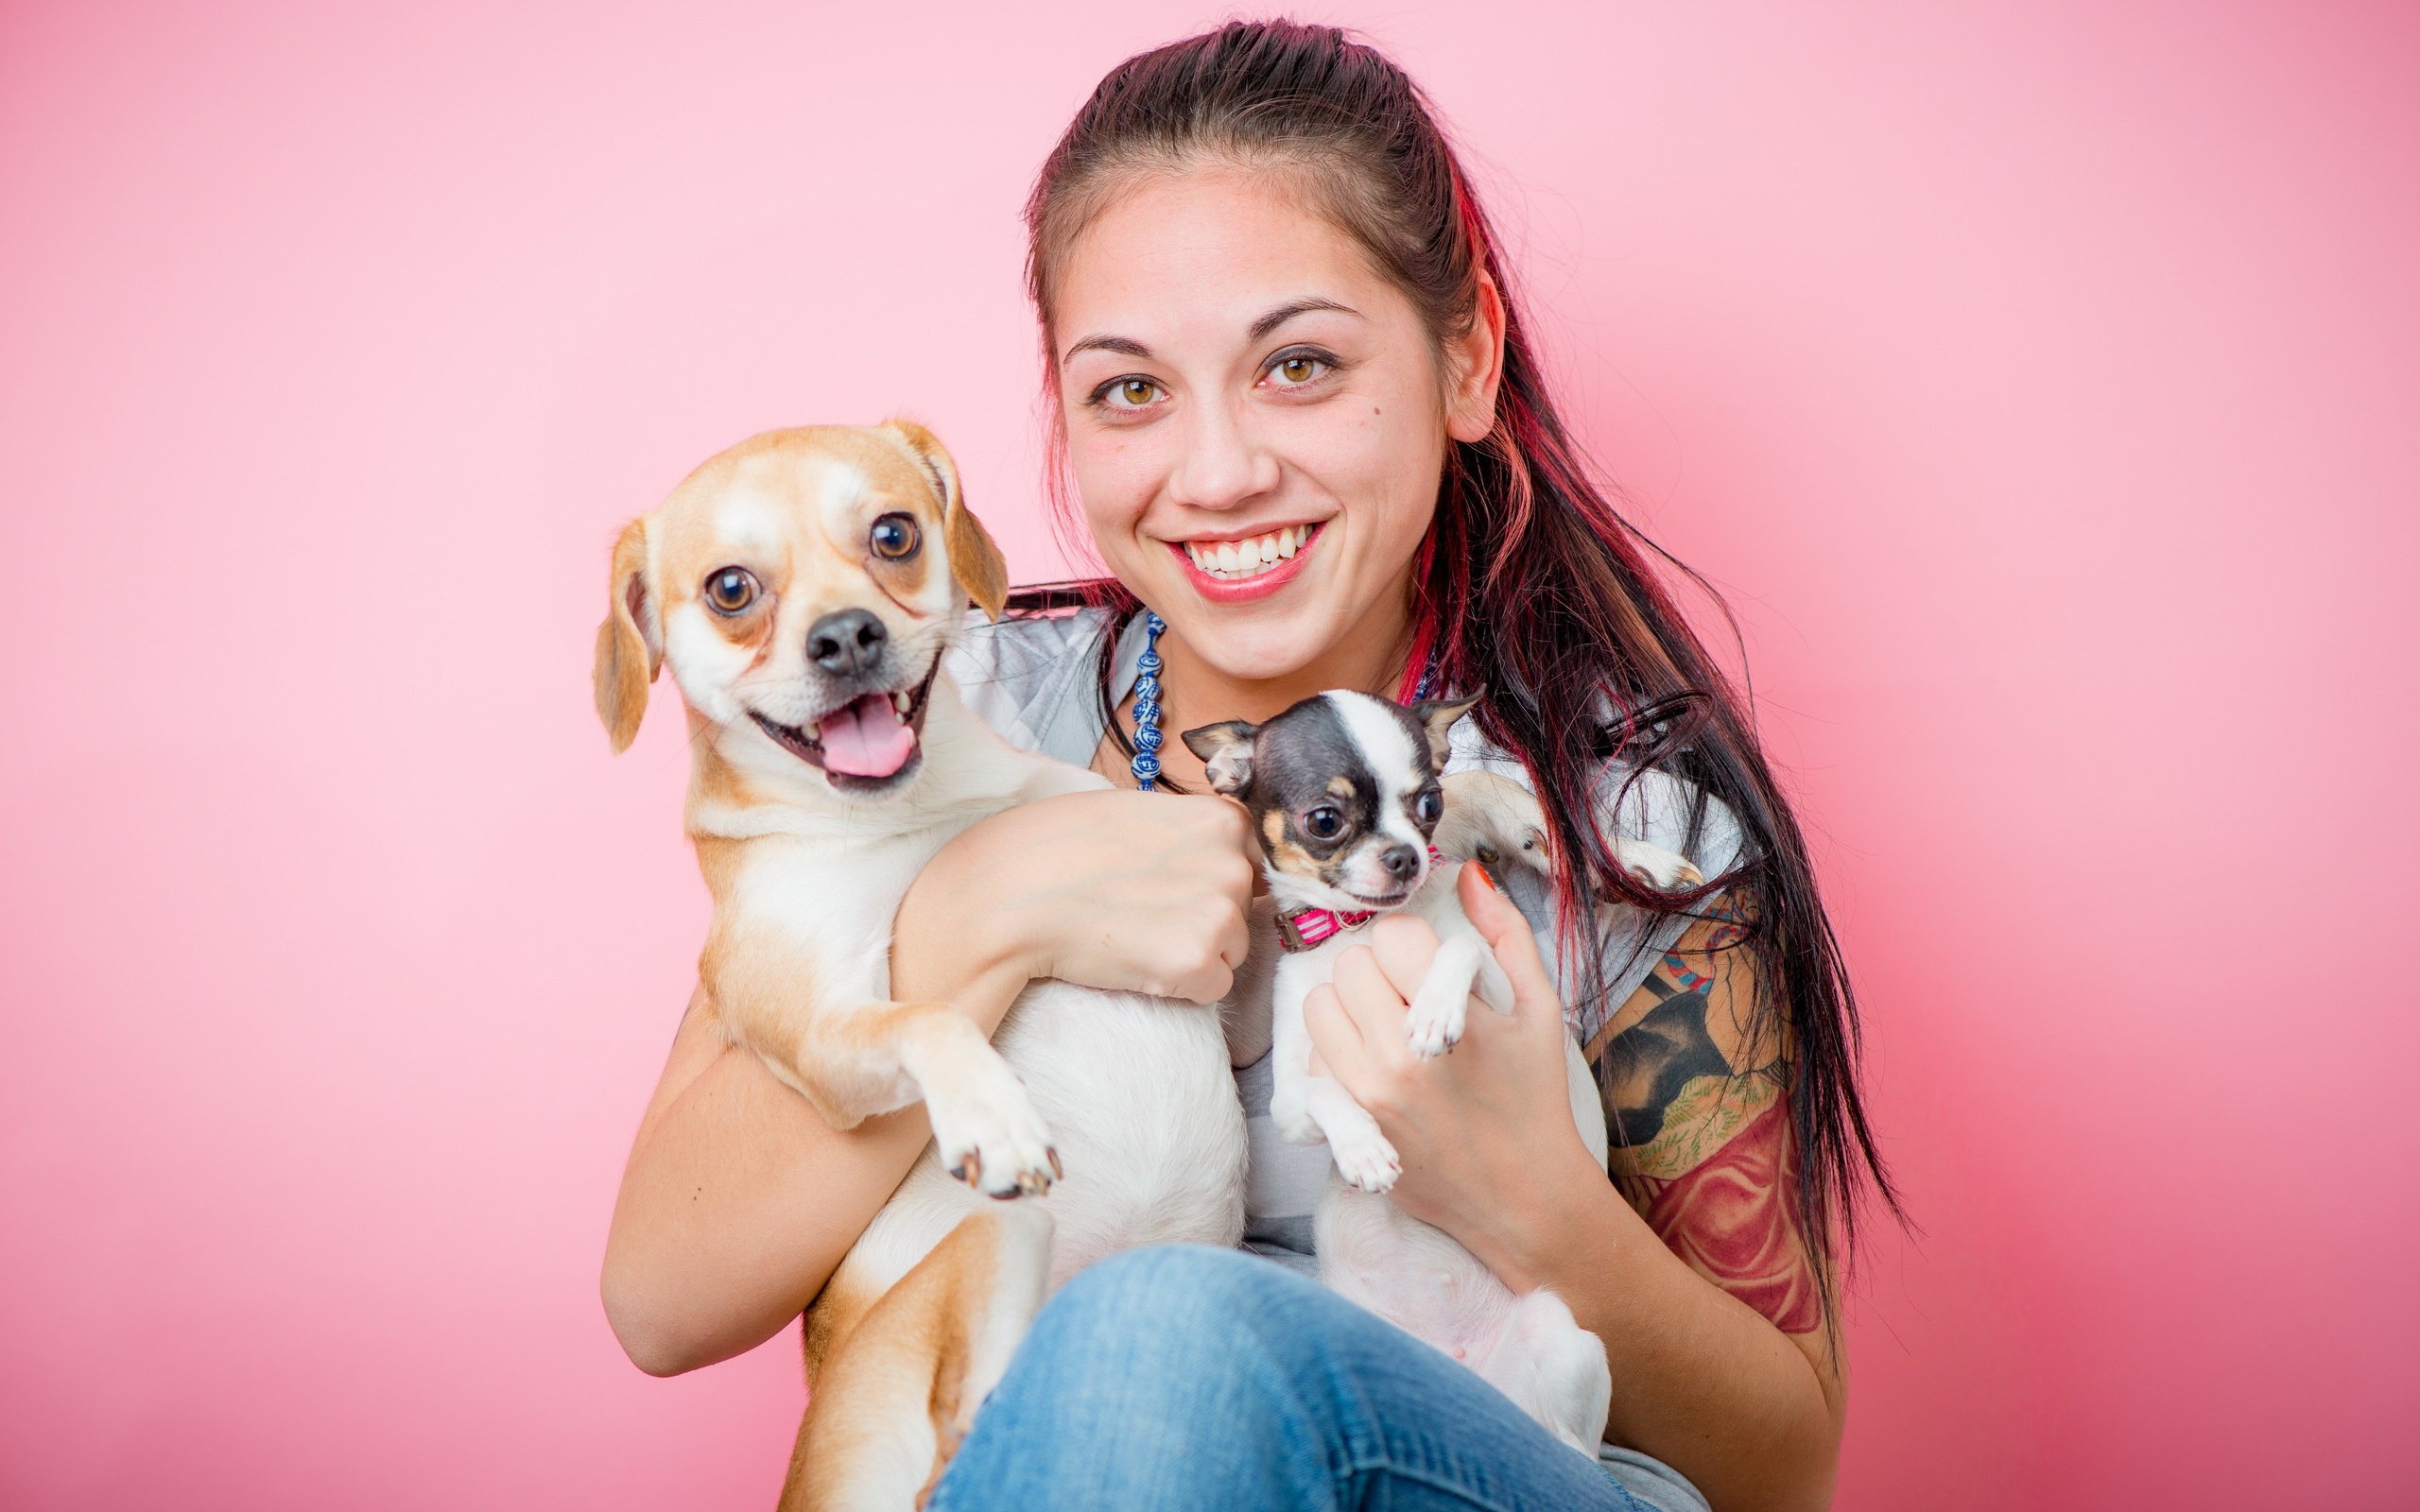 Картинка девушки с собакой. Девушка с собакой. Девушка с щенком. Девушка с собачкой на руках. Девушка с кошкой и собакой.